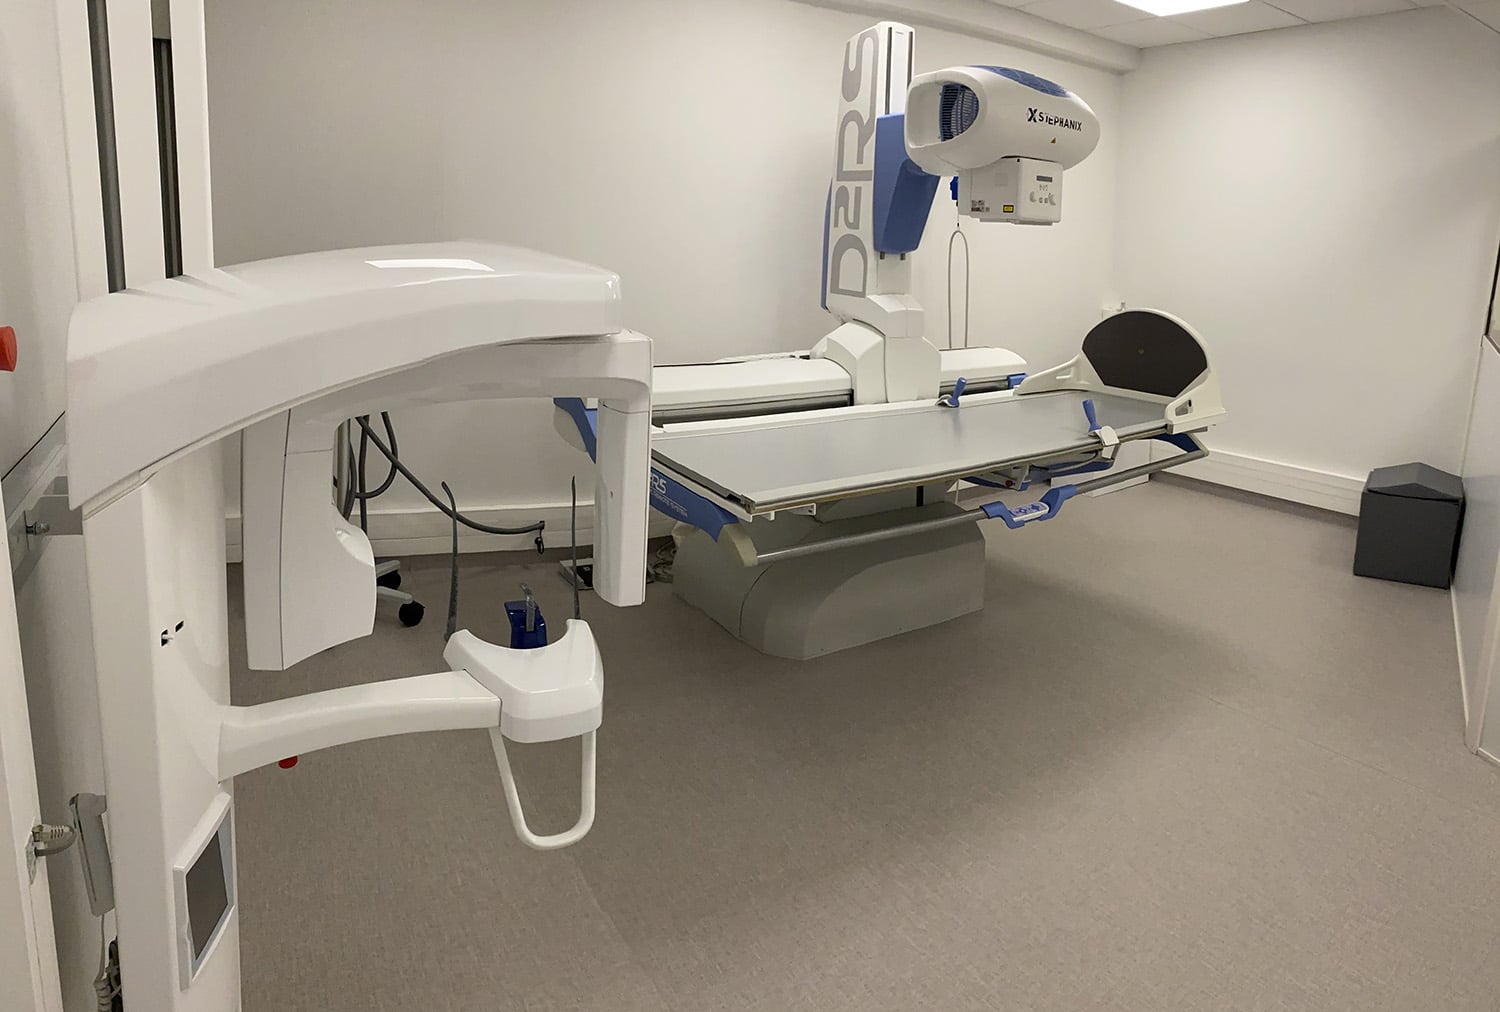 Radiodôme, Cabinet de radiologie près de Saint-Amant-Tallende à Issoire réalise votre examen de radiologie